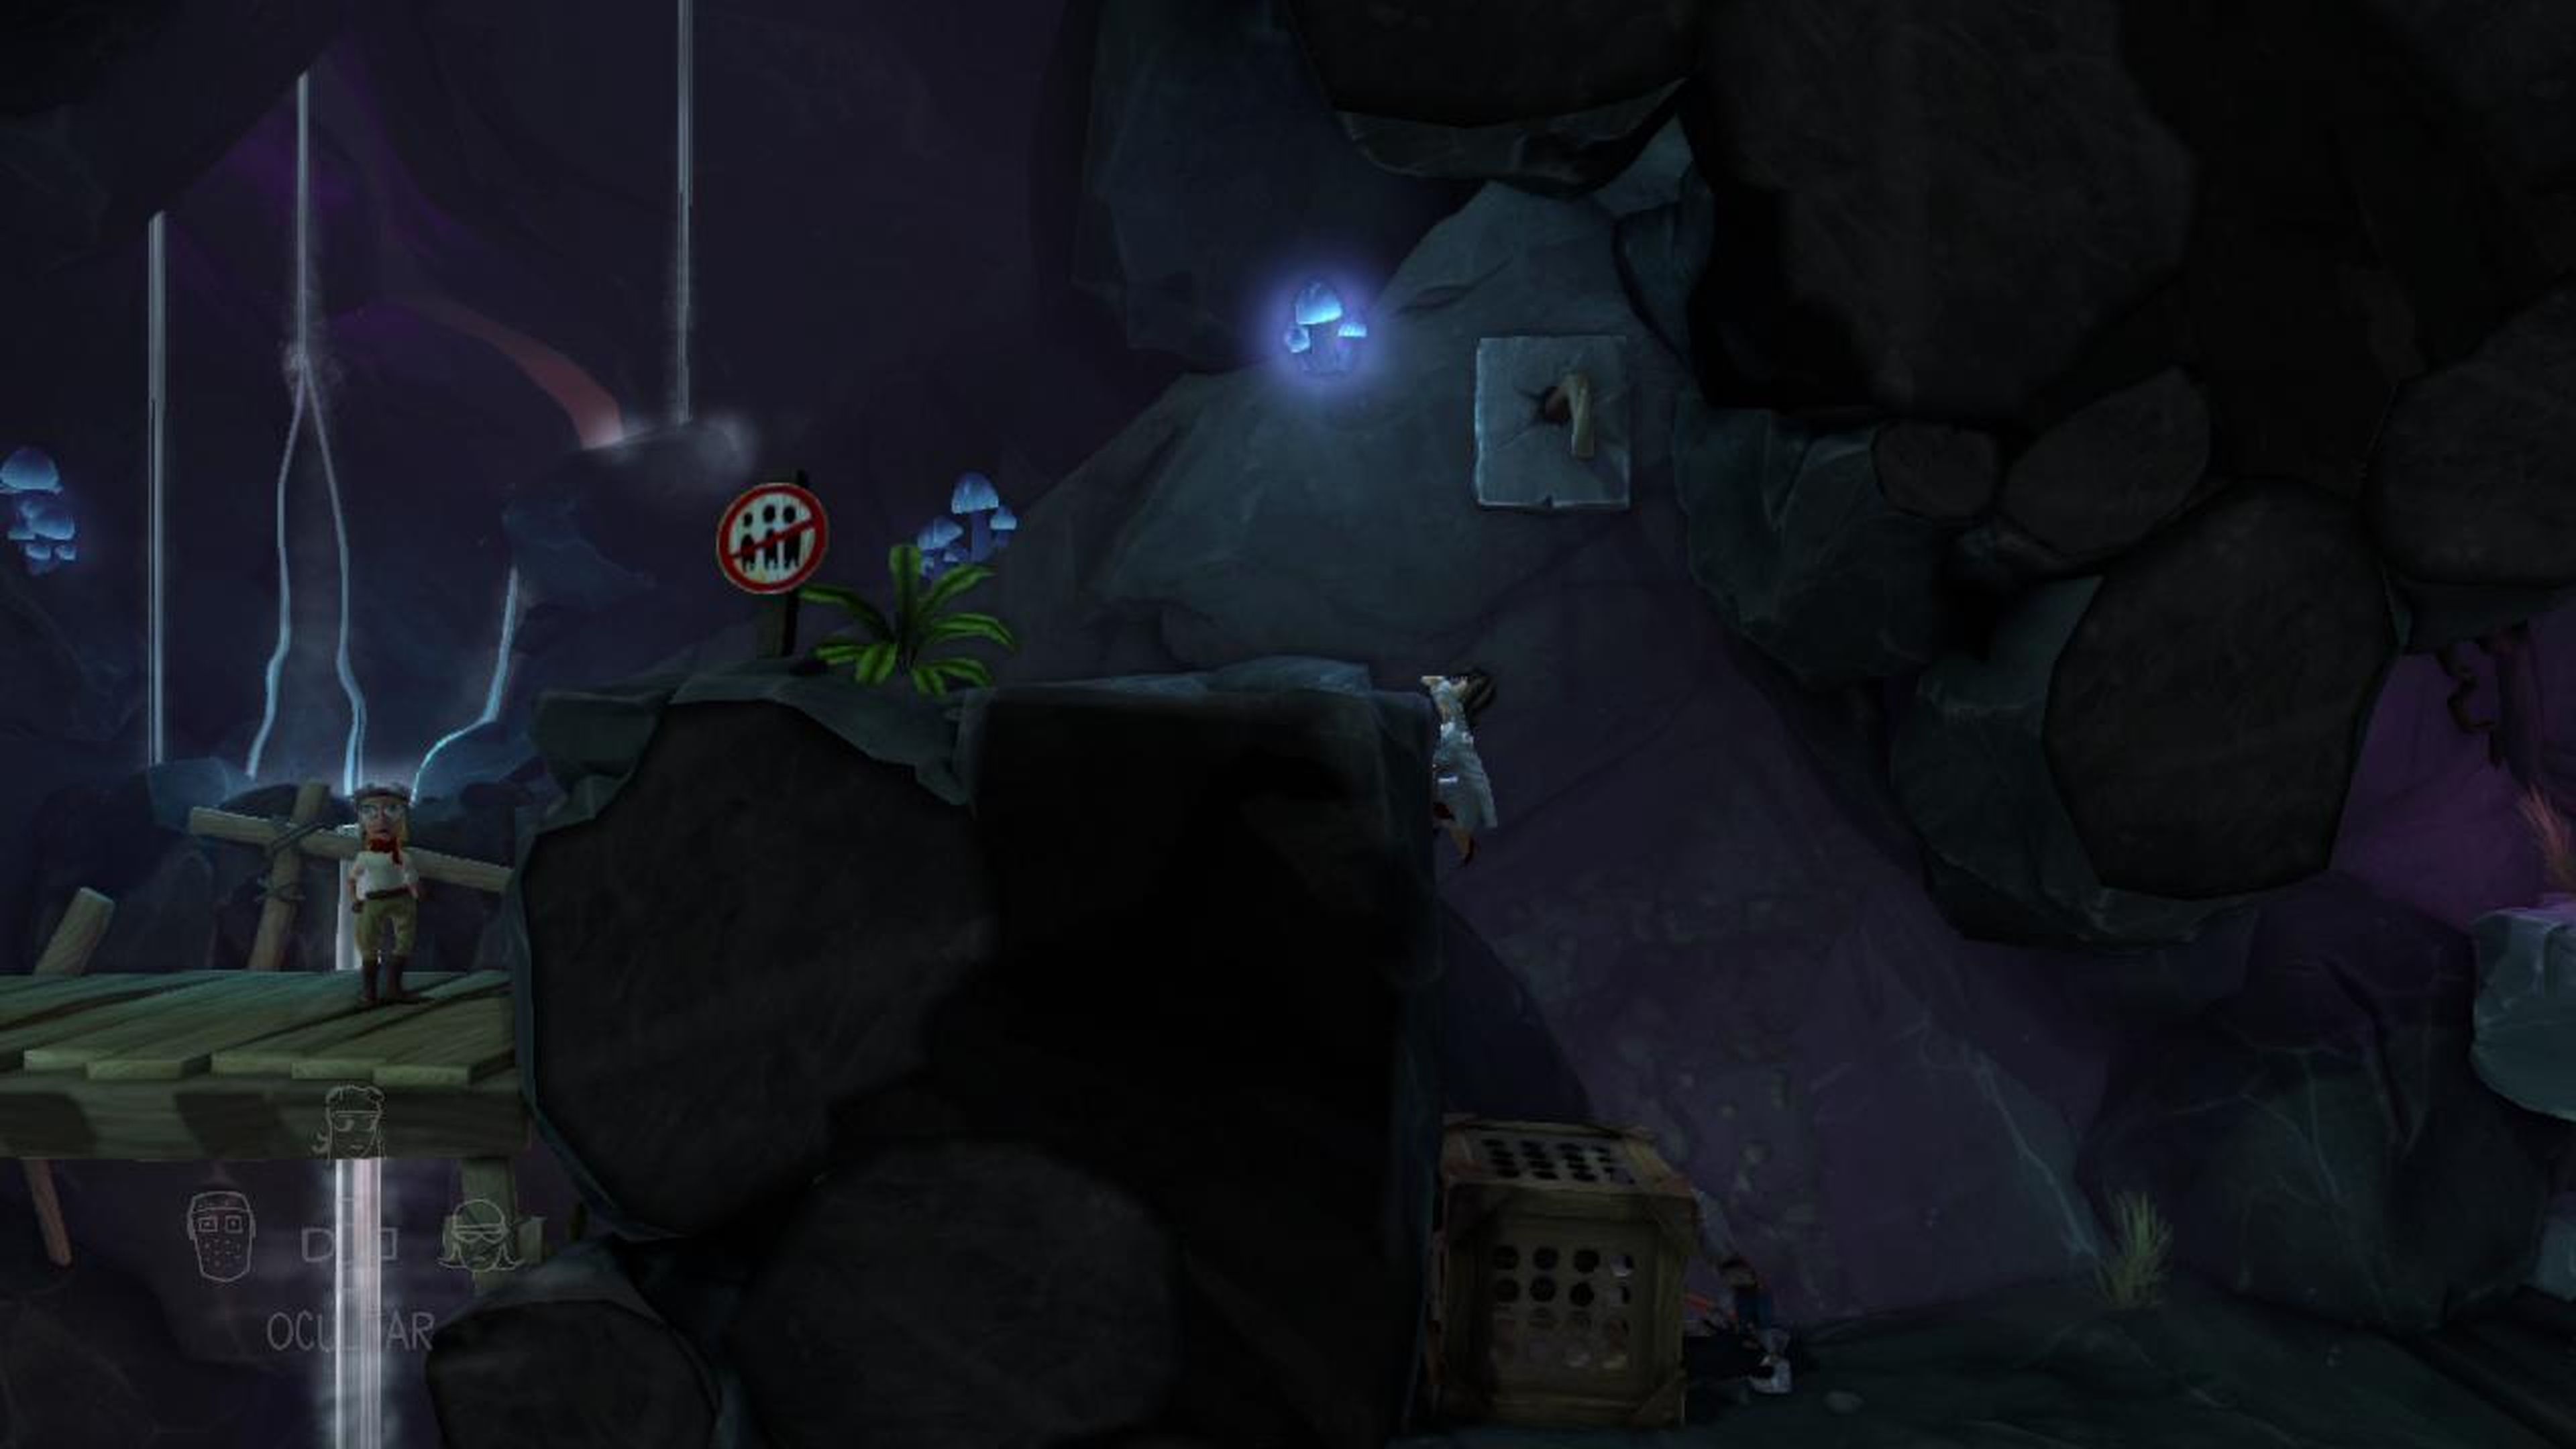 Análisis de The Cave en 360, PS3, PC y Wii U